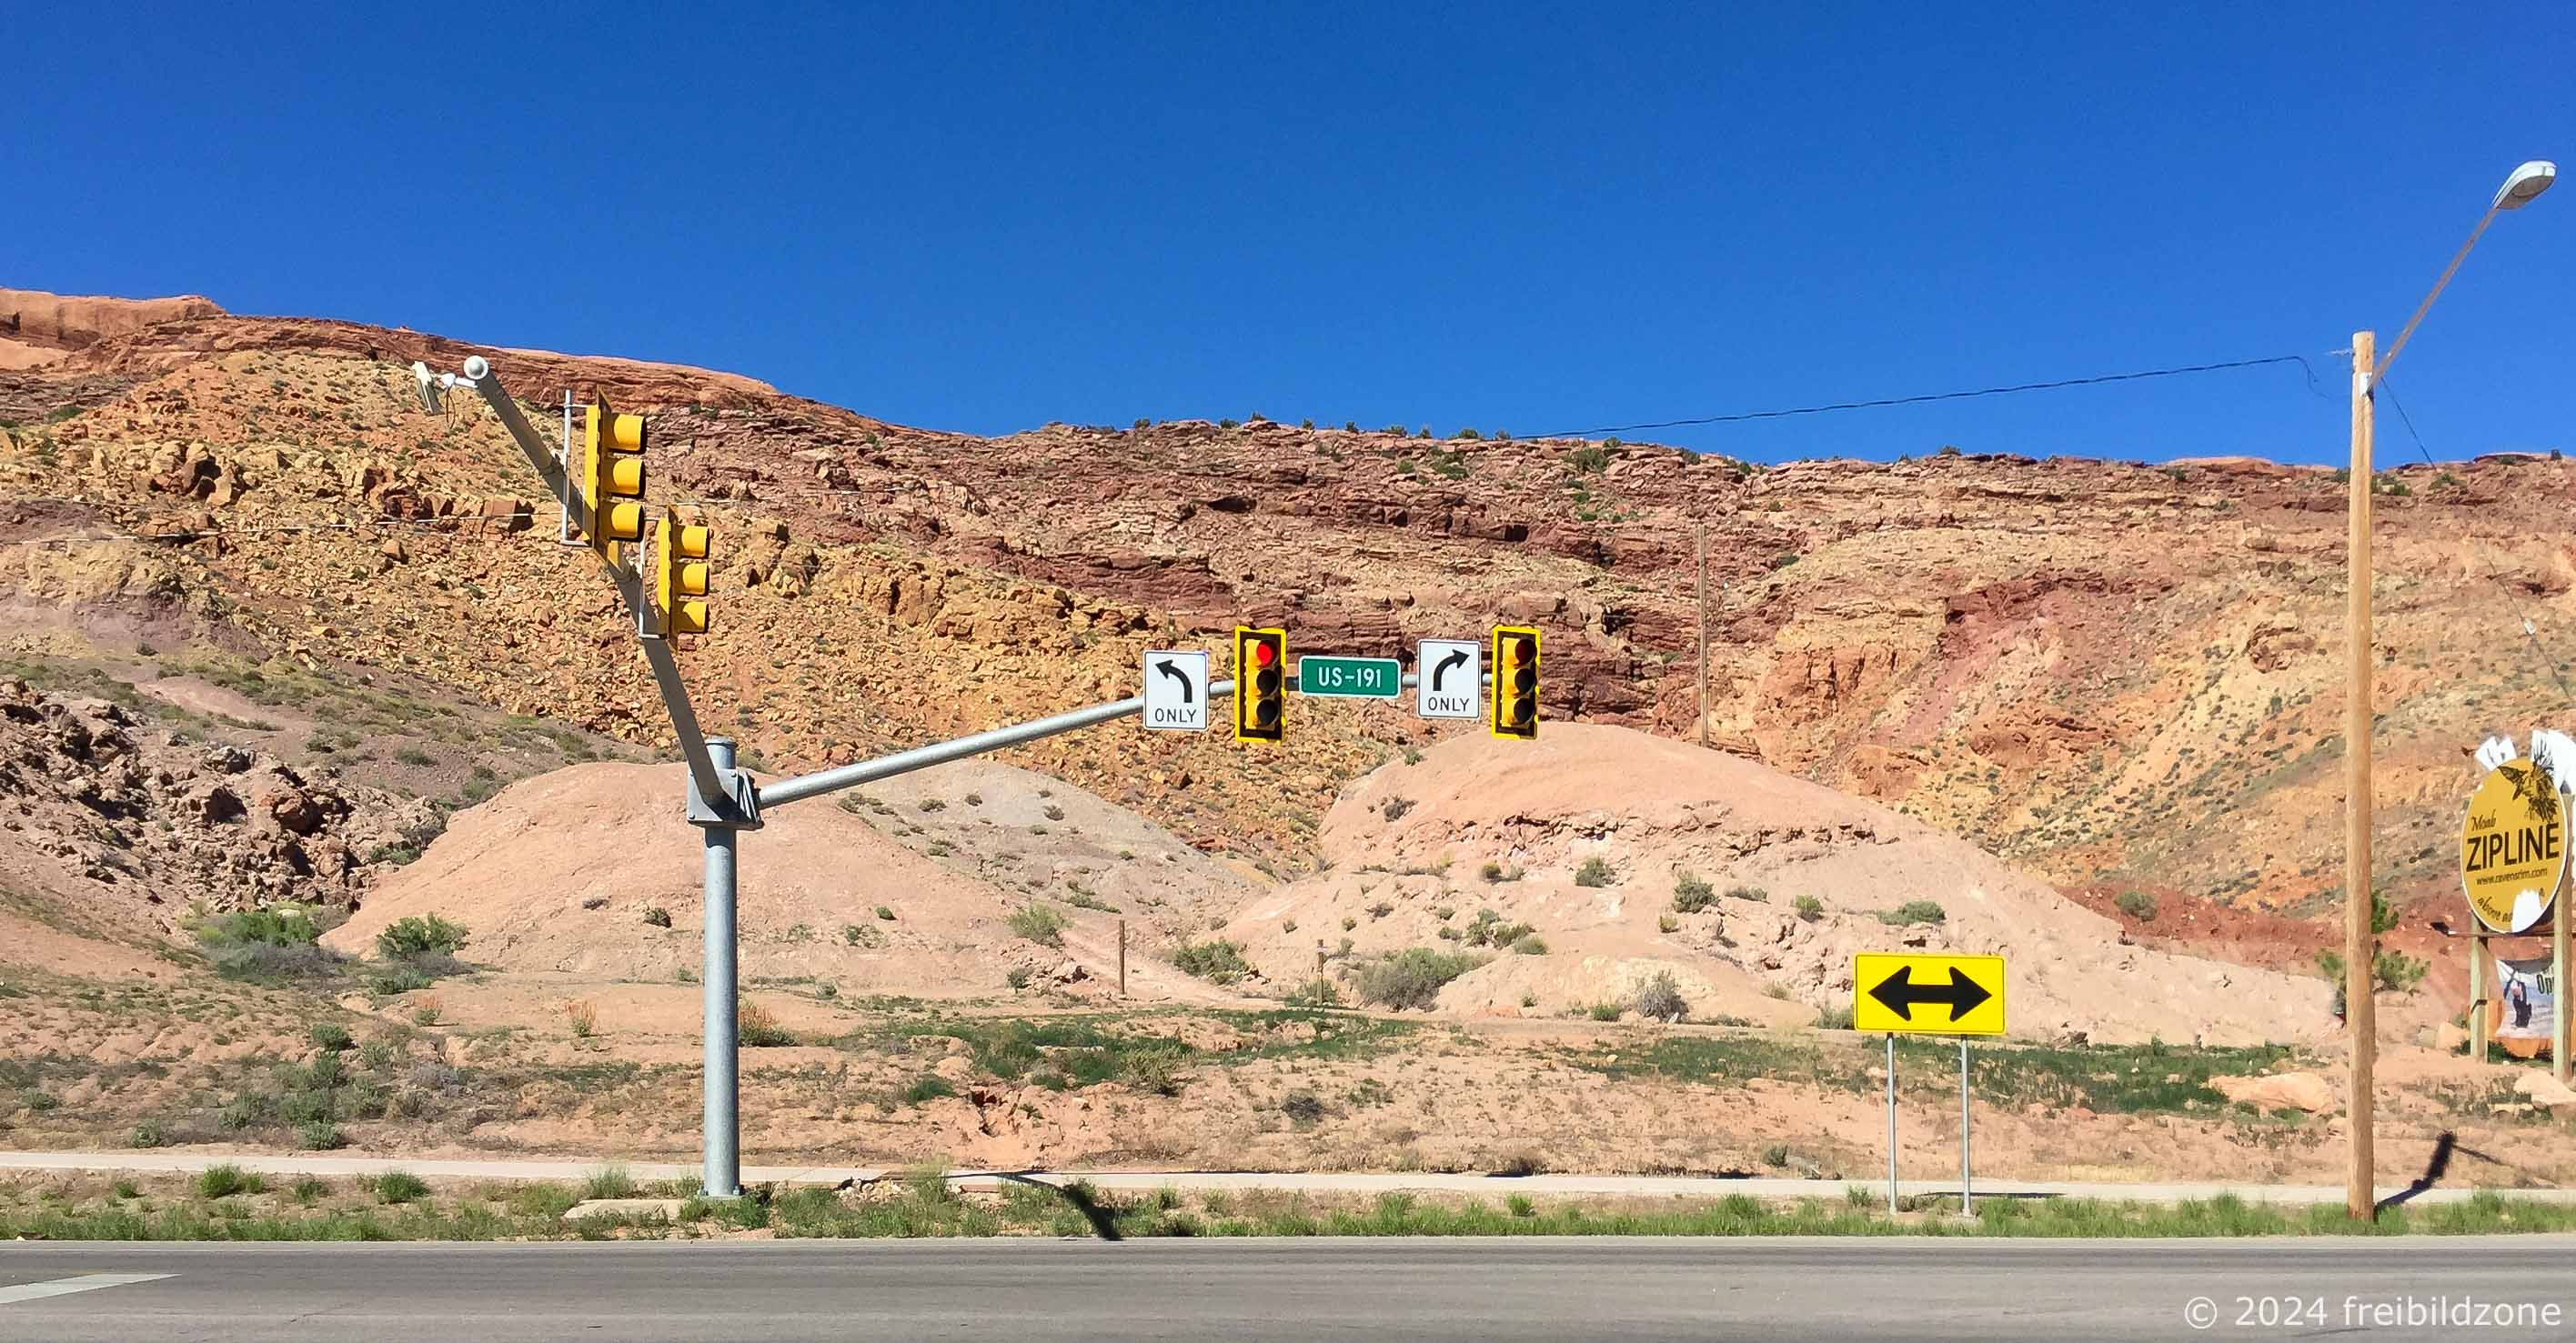 Main road in Moab, Utah, USA